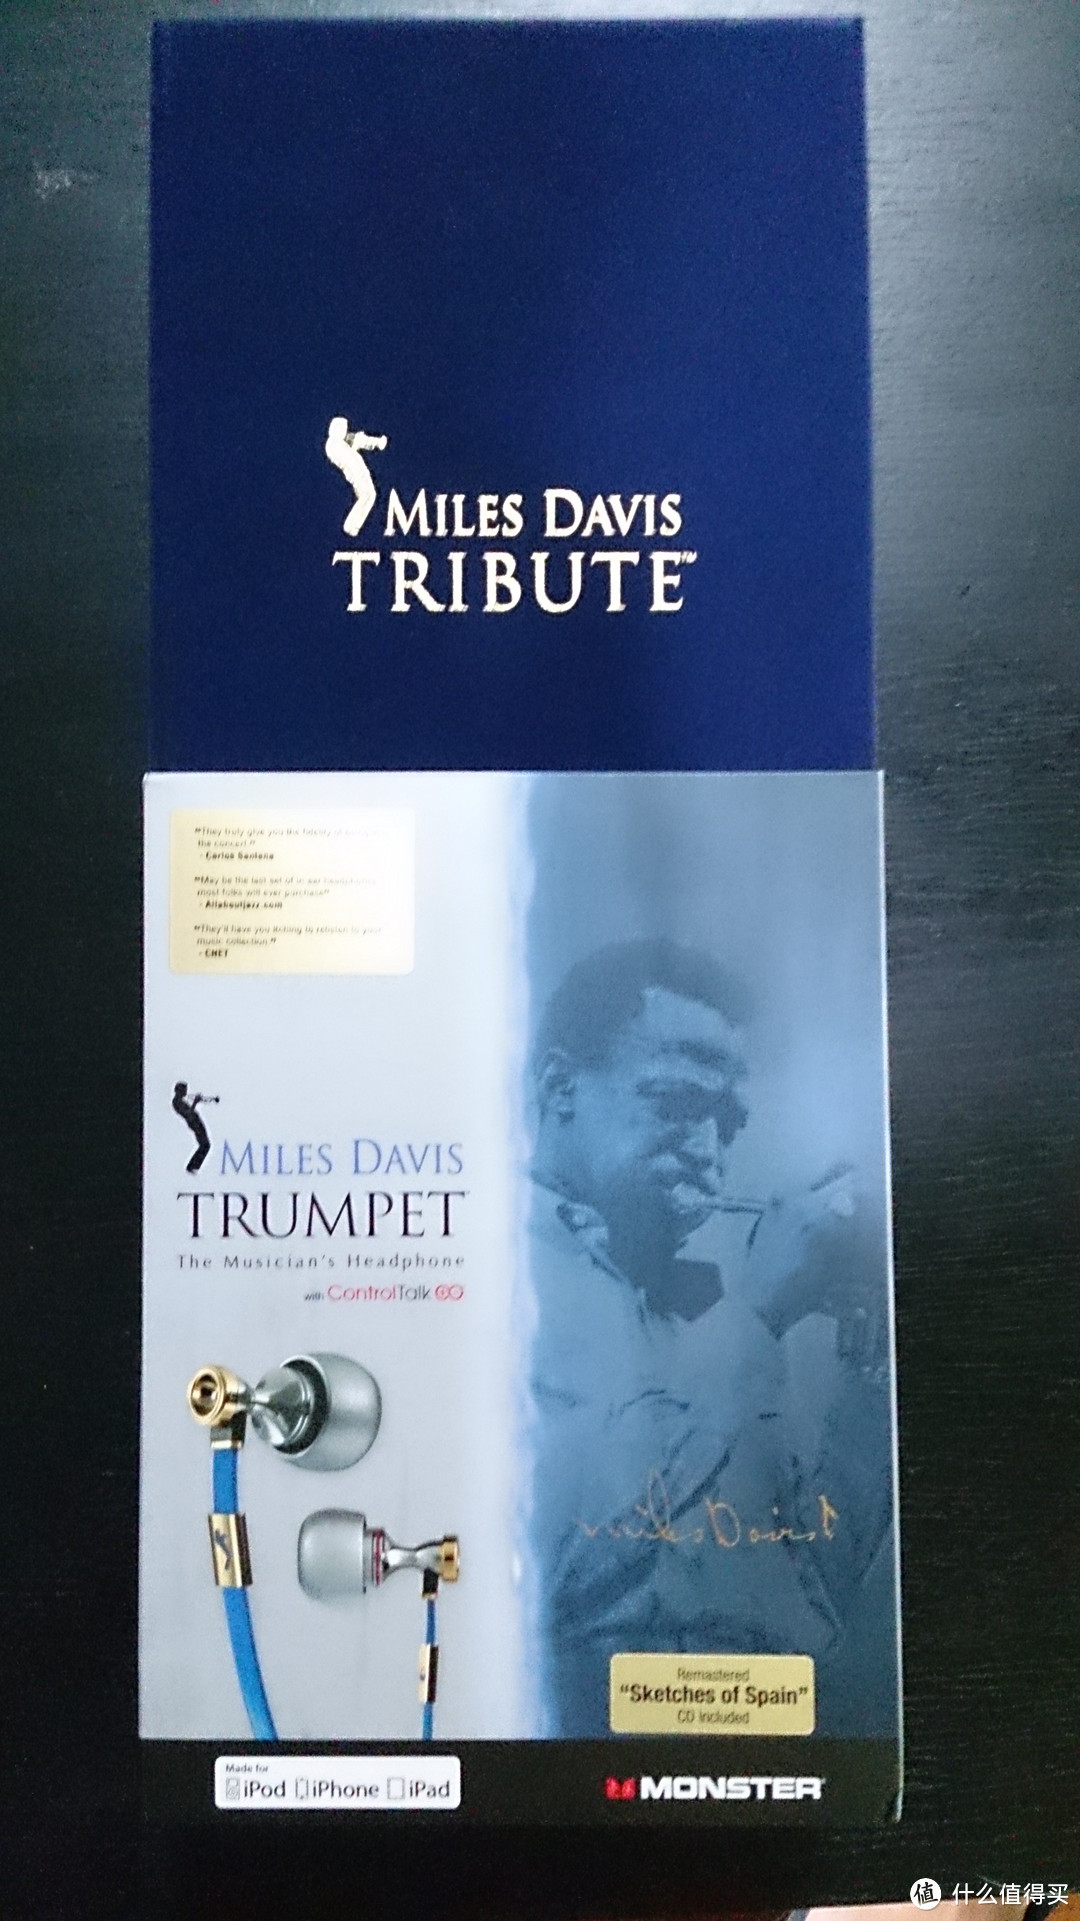 海淘一个月到手的 Monster 魔声 Jazz2 新爵士 Miles Davis Trumpet限定版 入耳式耳塞 